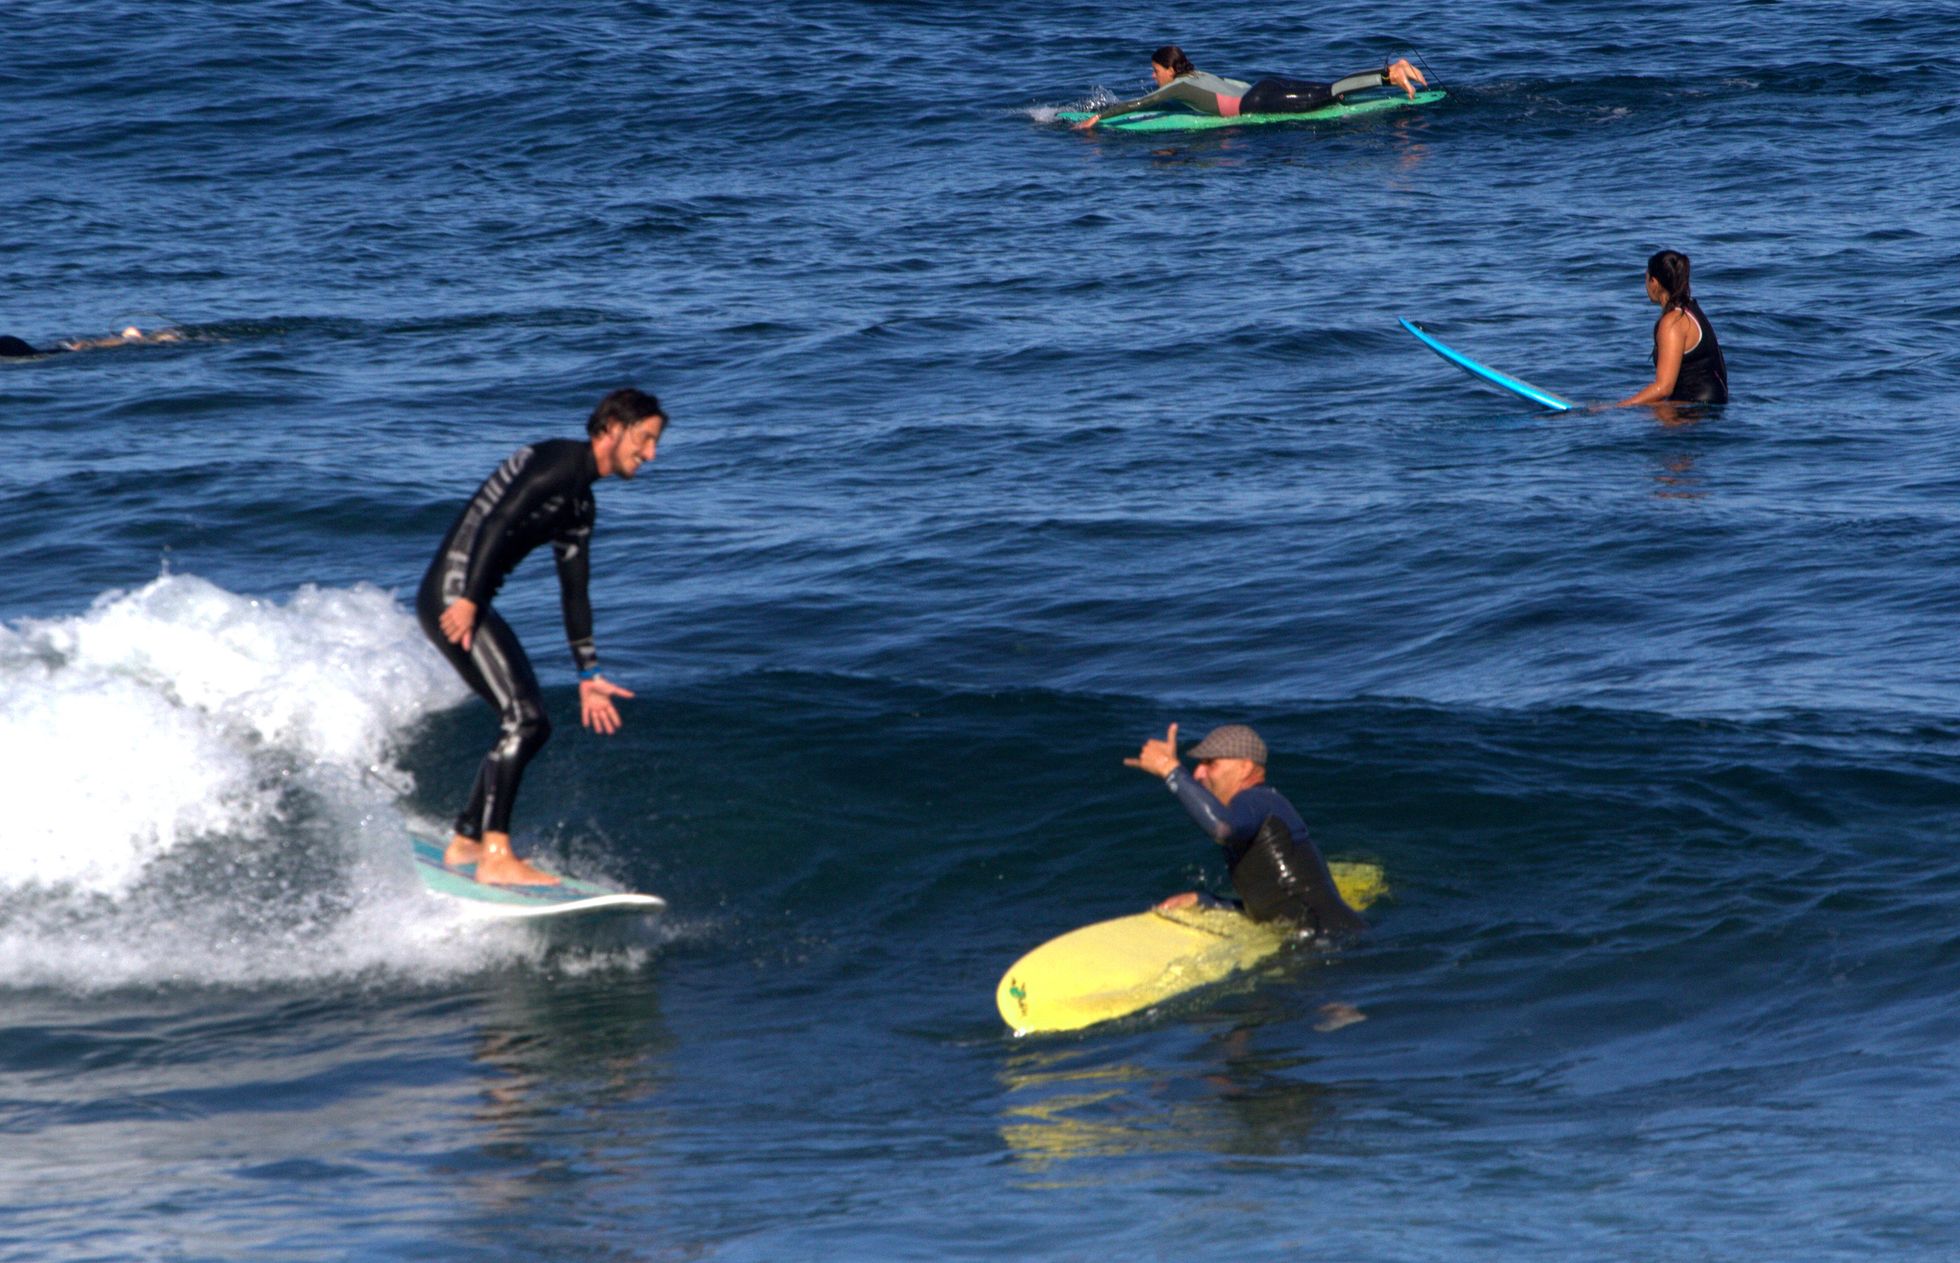 Пляжи закрты, но водный спорт никто не отменял. Жители Тенерифе наслаждаются отменой строгих правил.